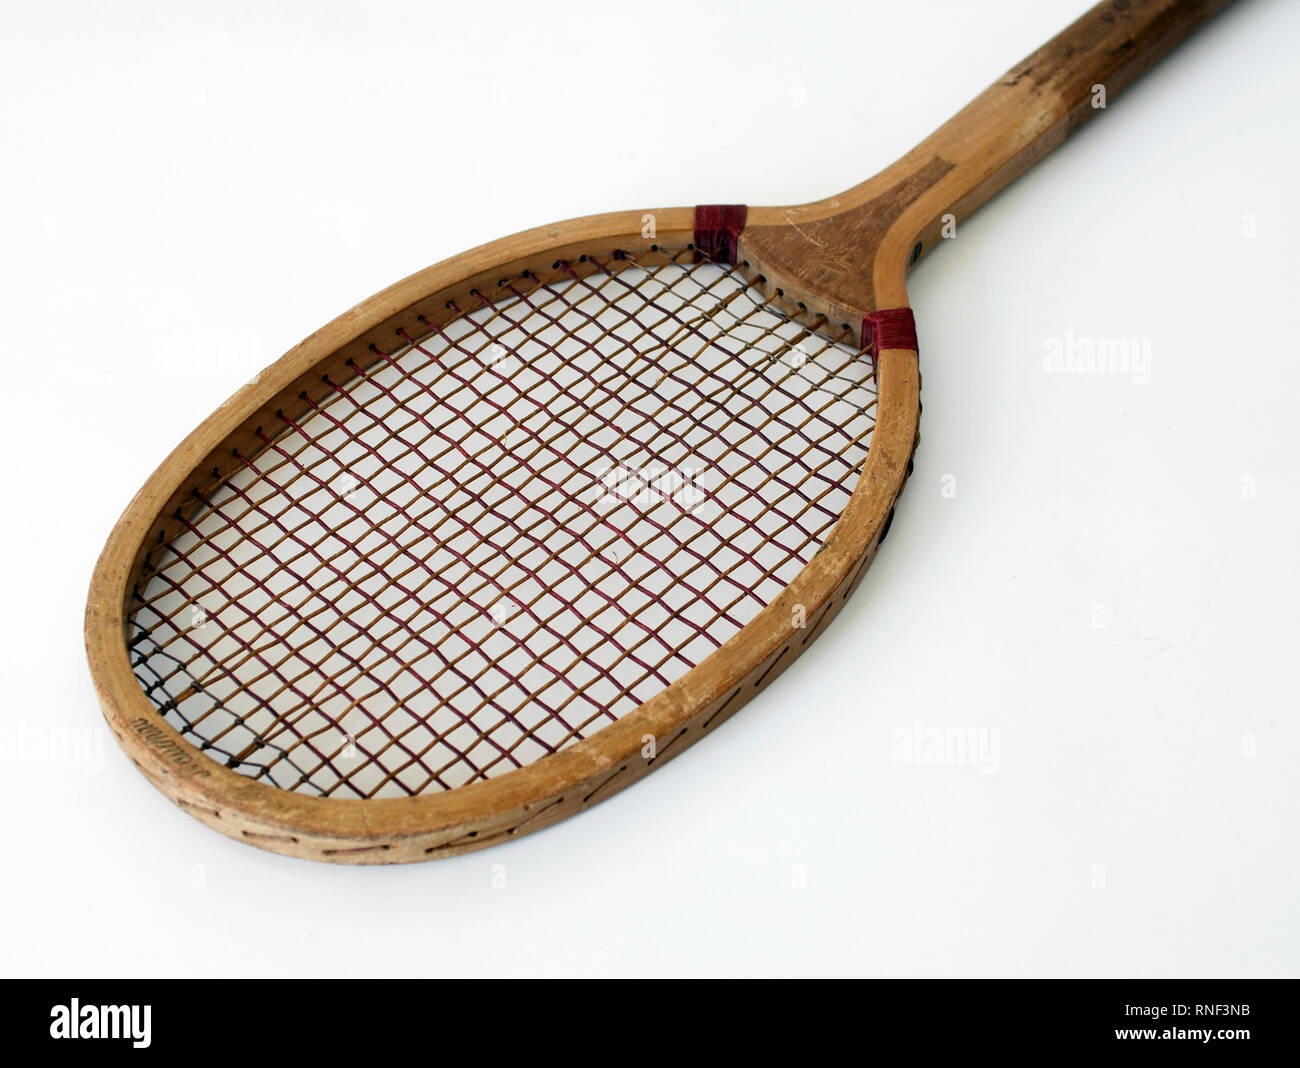 Vieille raquette en bois pour jouer au tennis Photo Stock - Alamy